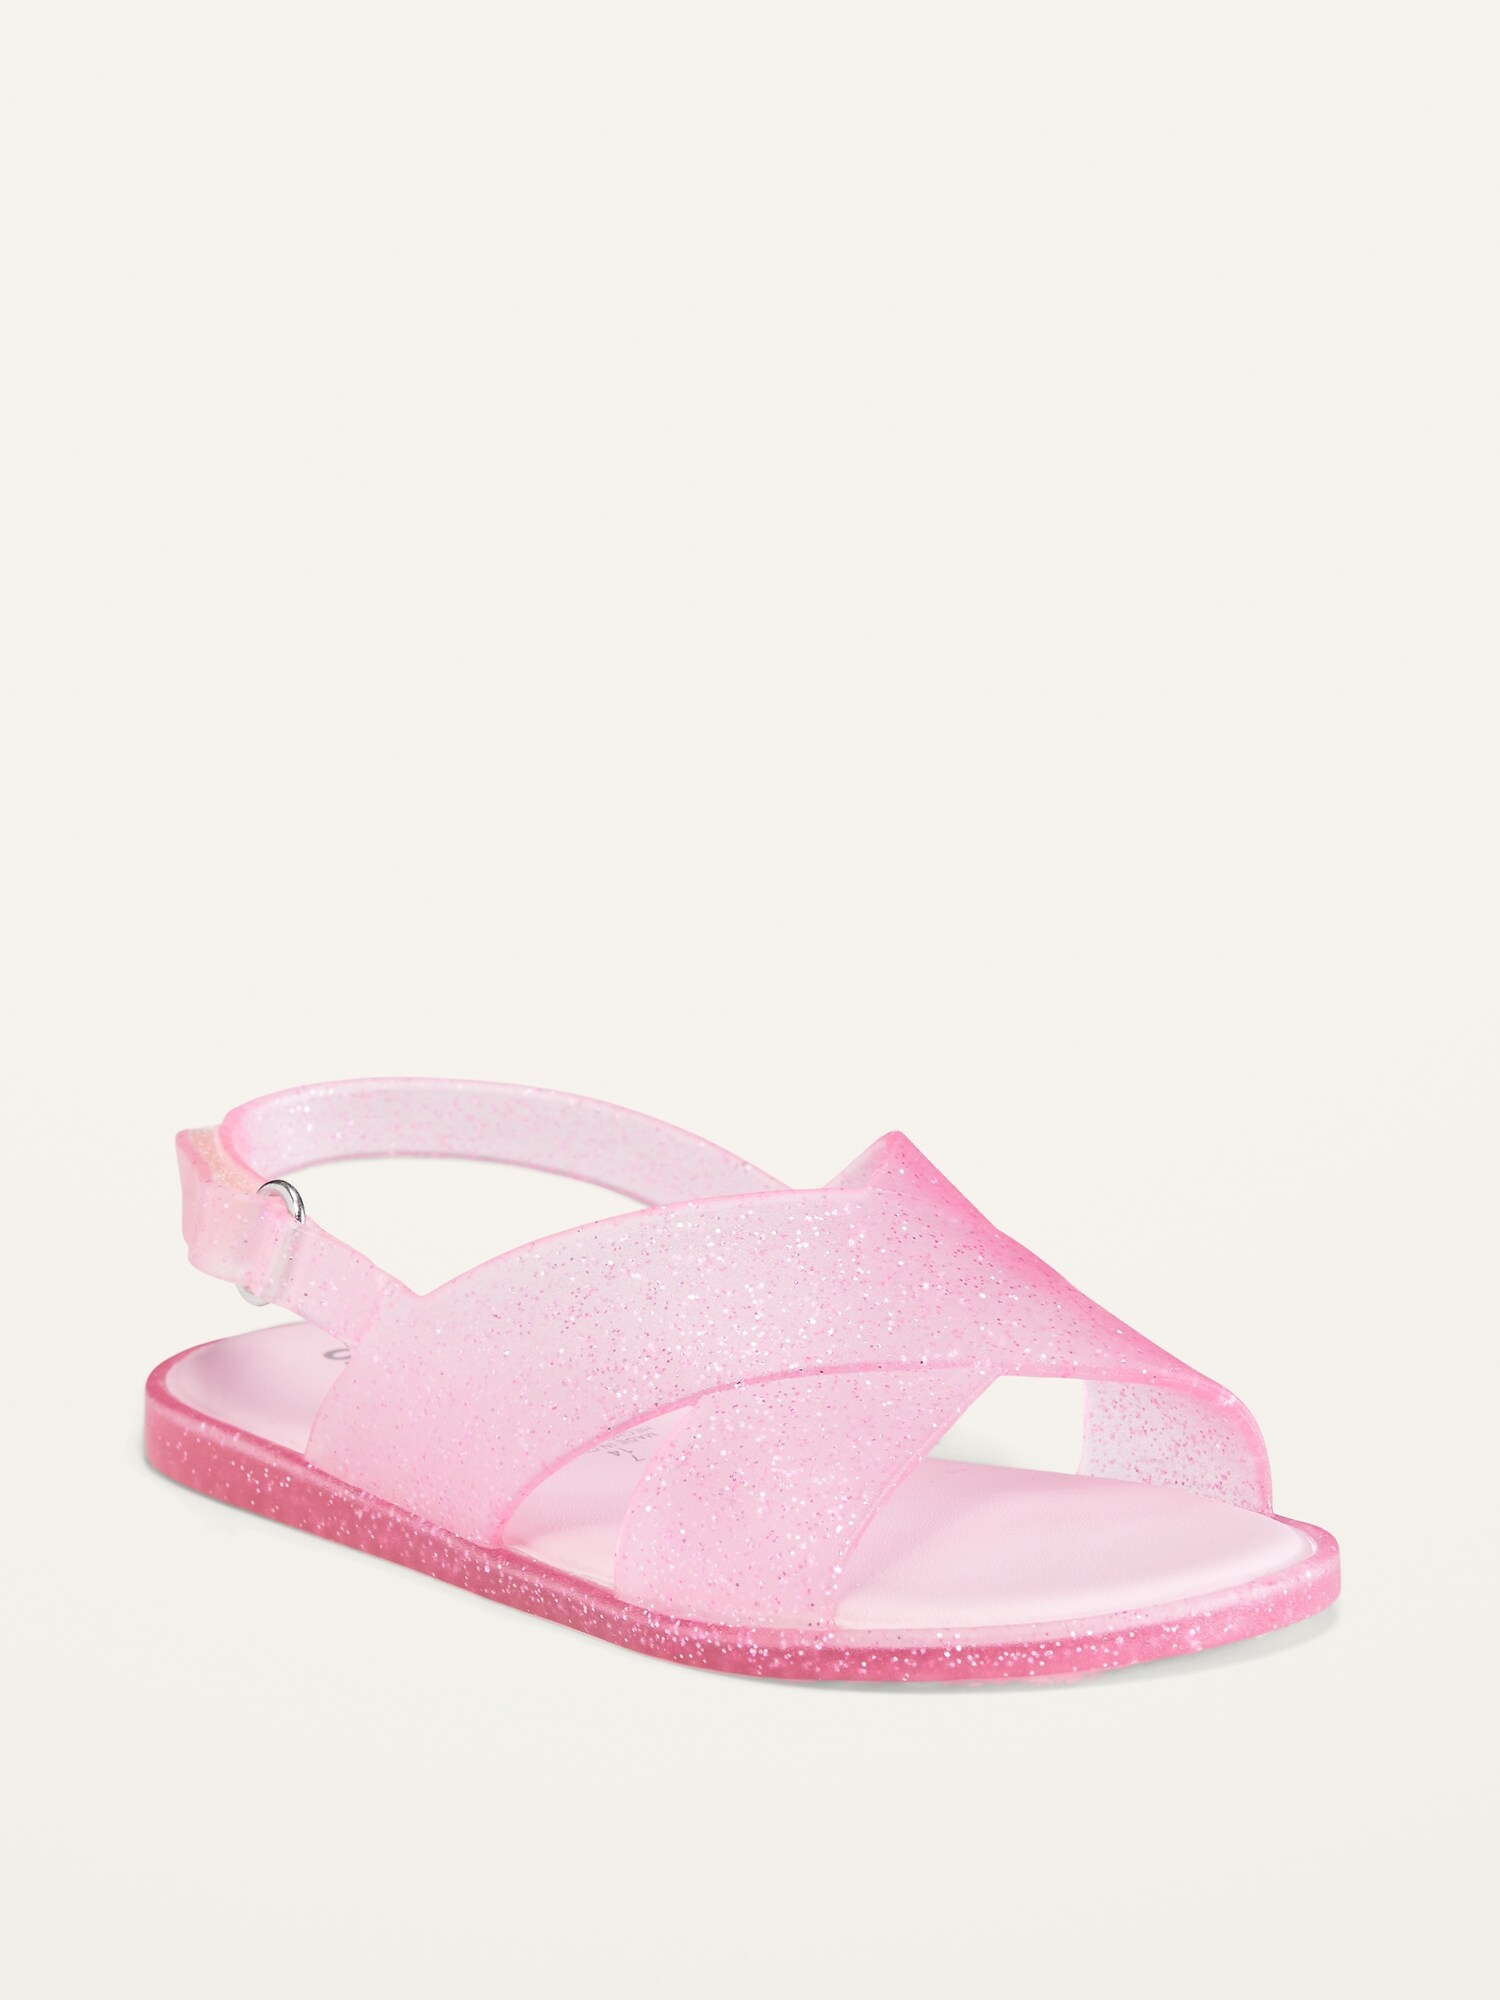 Glitter Jelly Cross-Strap Sandals for Toddler Girls